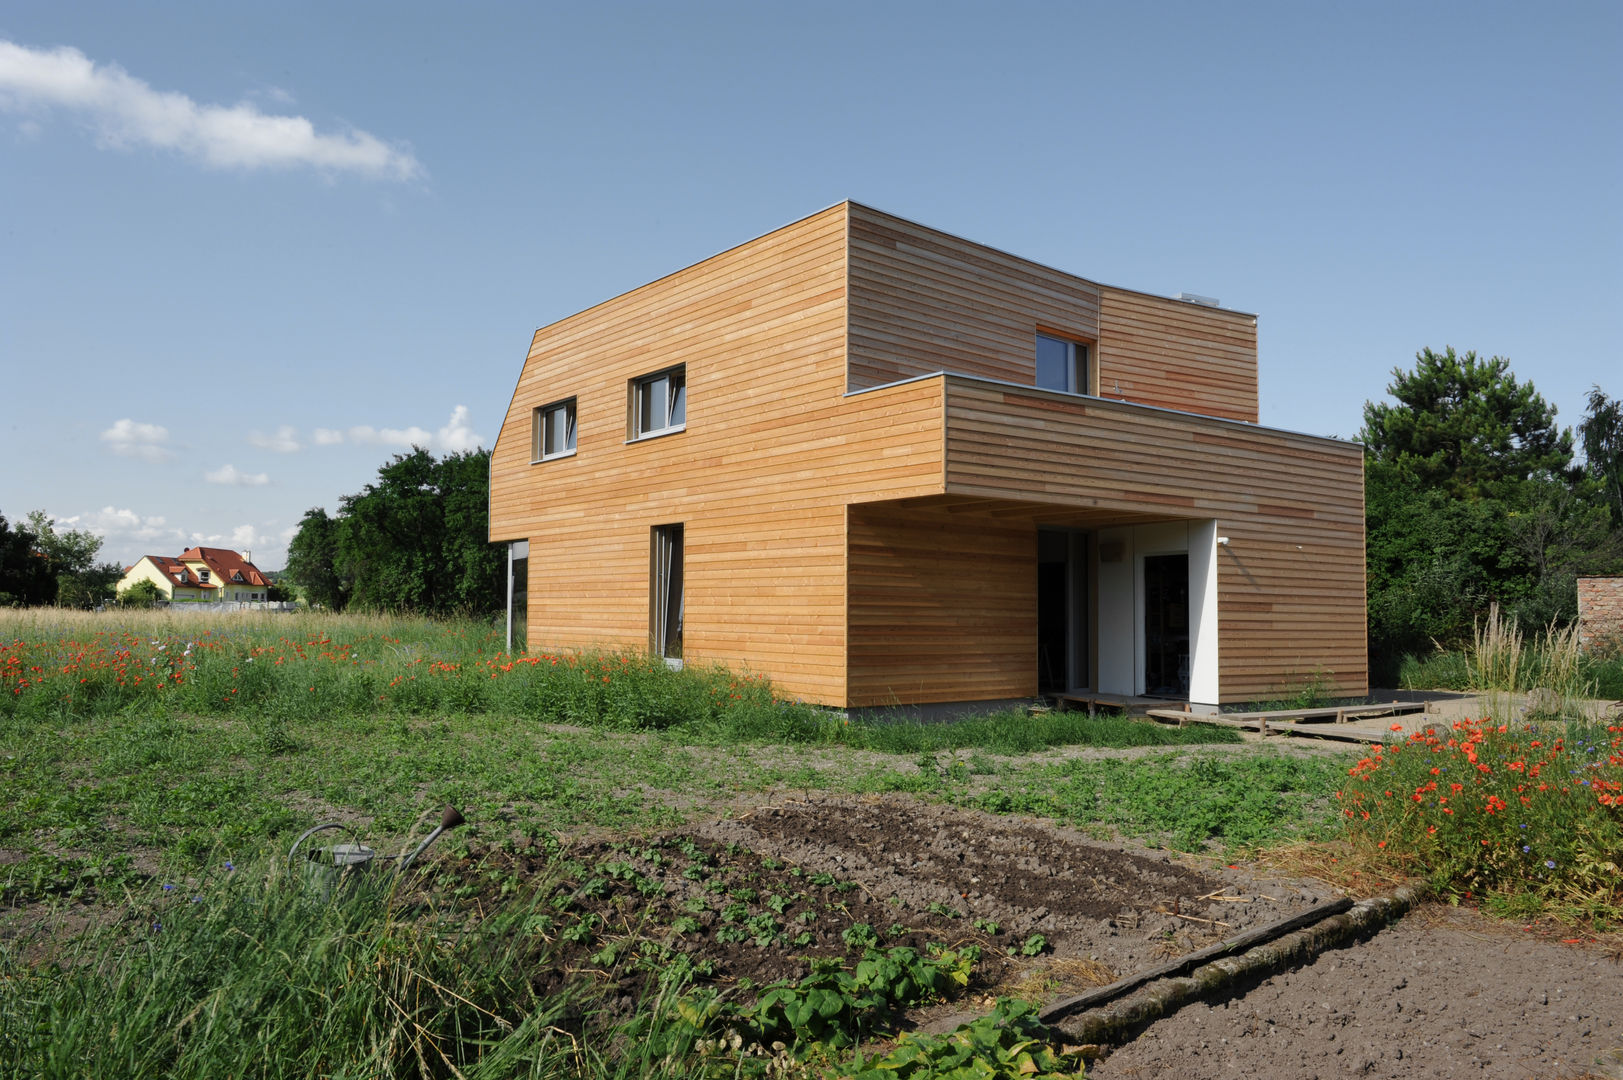 Niedrigstenergie - Einfamilienhaus in Brettstapelbauweise in Bad Vöslau (A), Symbios Architektur Symbios Architektur Modern houses Wood Wood effect